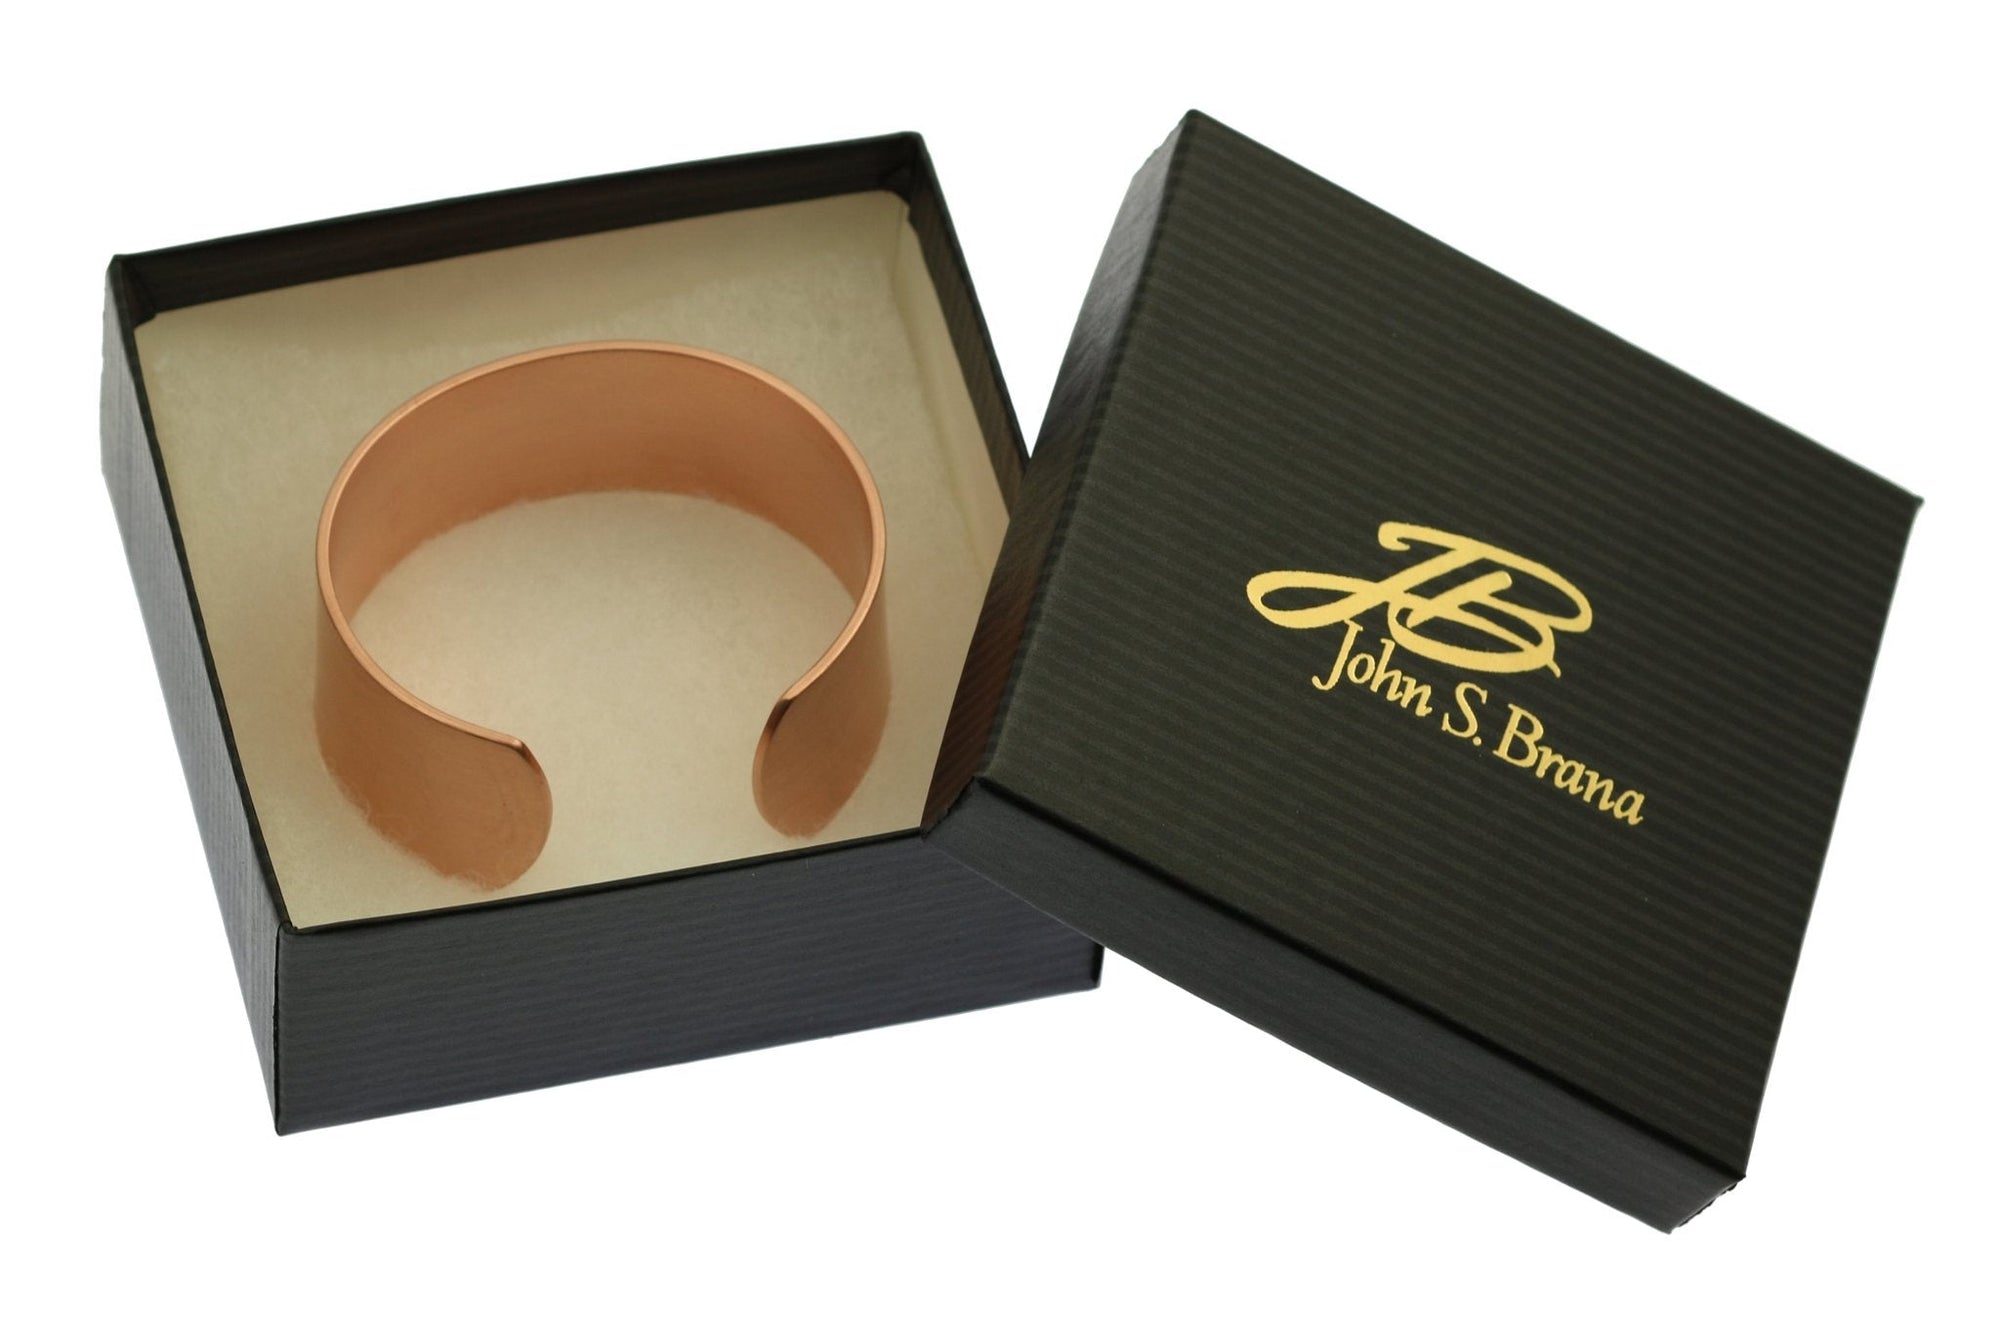 1 Inch Wide Men's Brushed Copper Cuff Bracelet in Gift Box